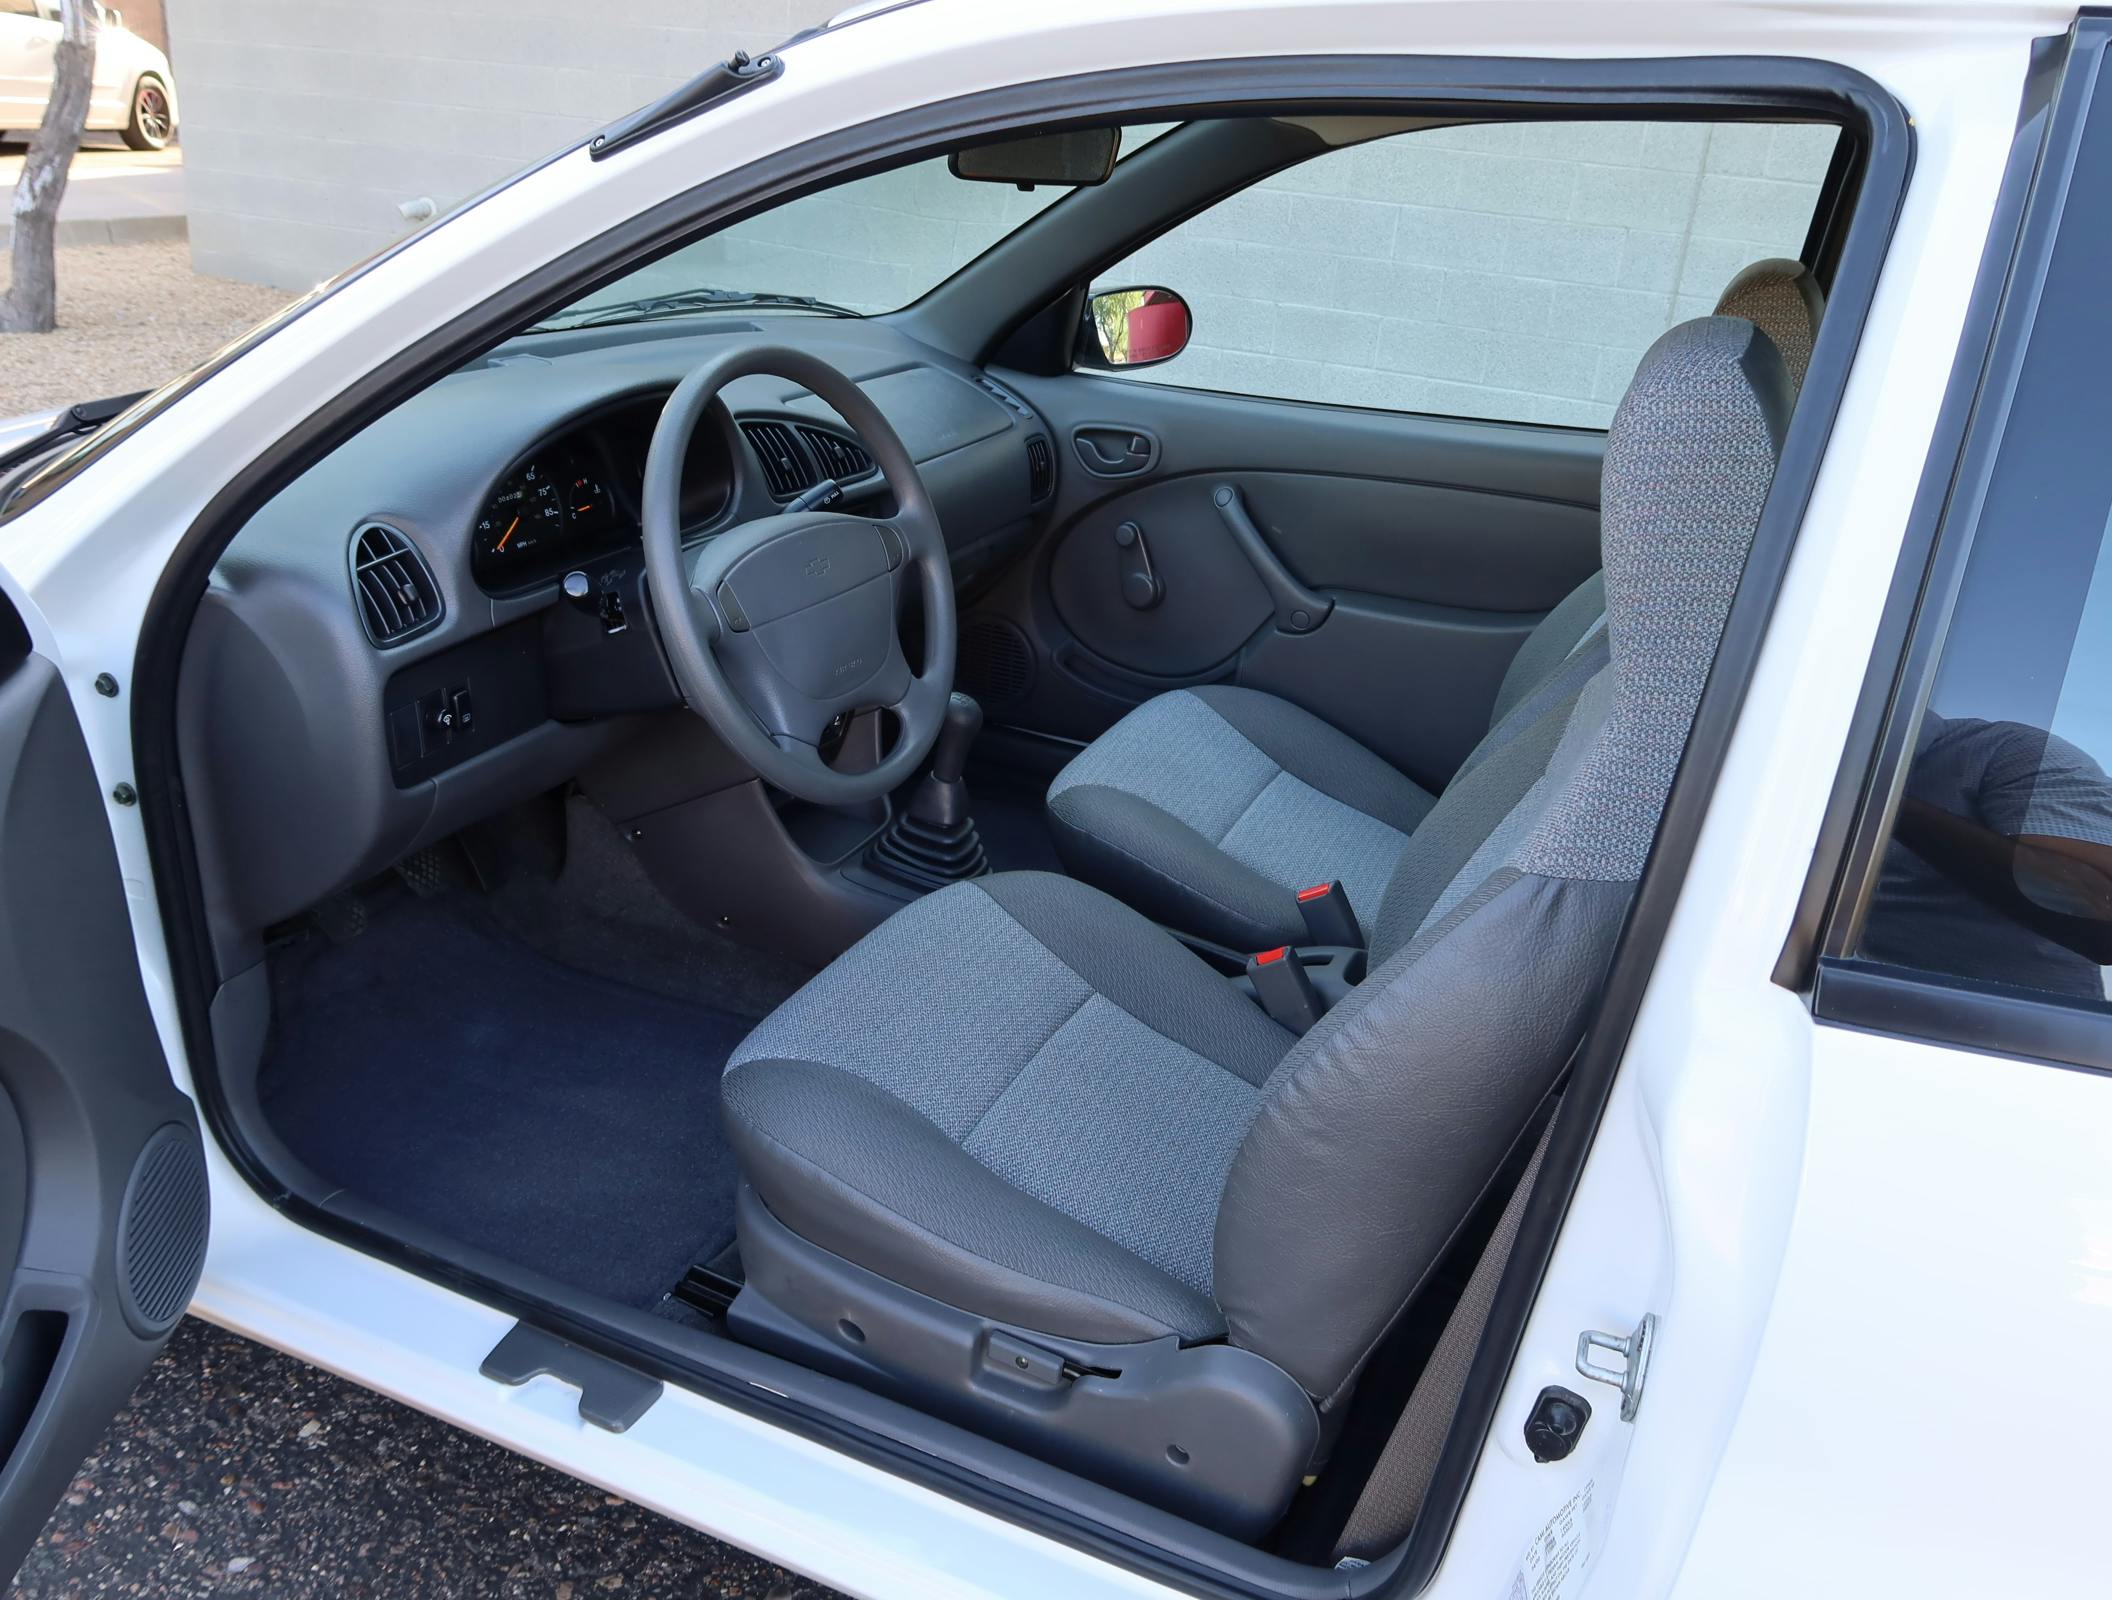 2000 Chevrolet Metro Coupe 5-Speed interior